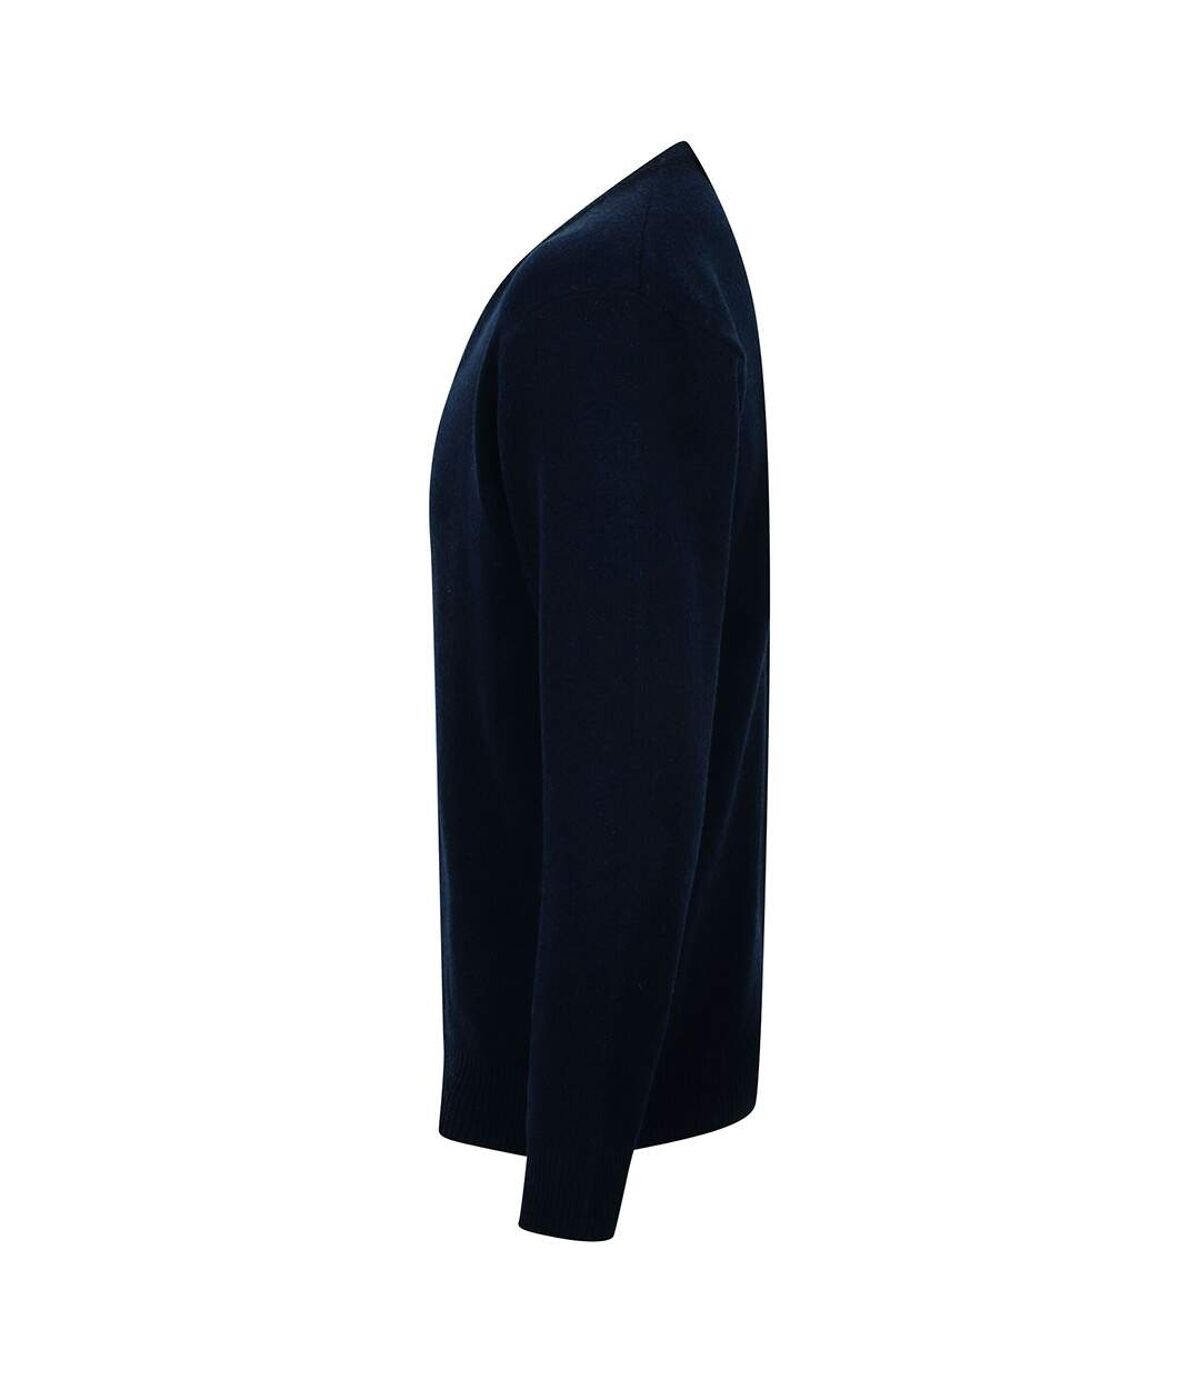 Henbury Mens Lambswool Woolmark® V-Neck Jumper / Sweatshirt (Navy) - UTRW665